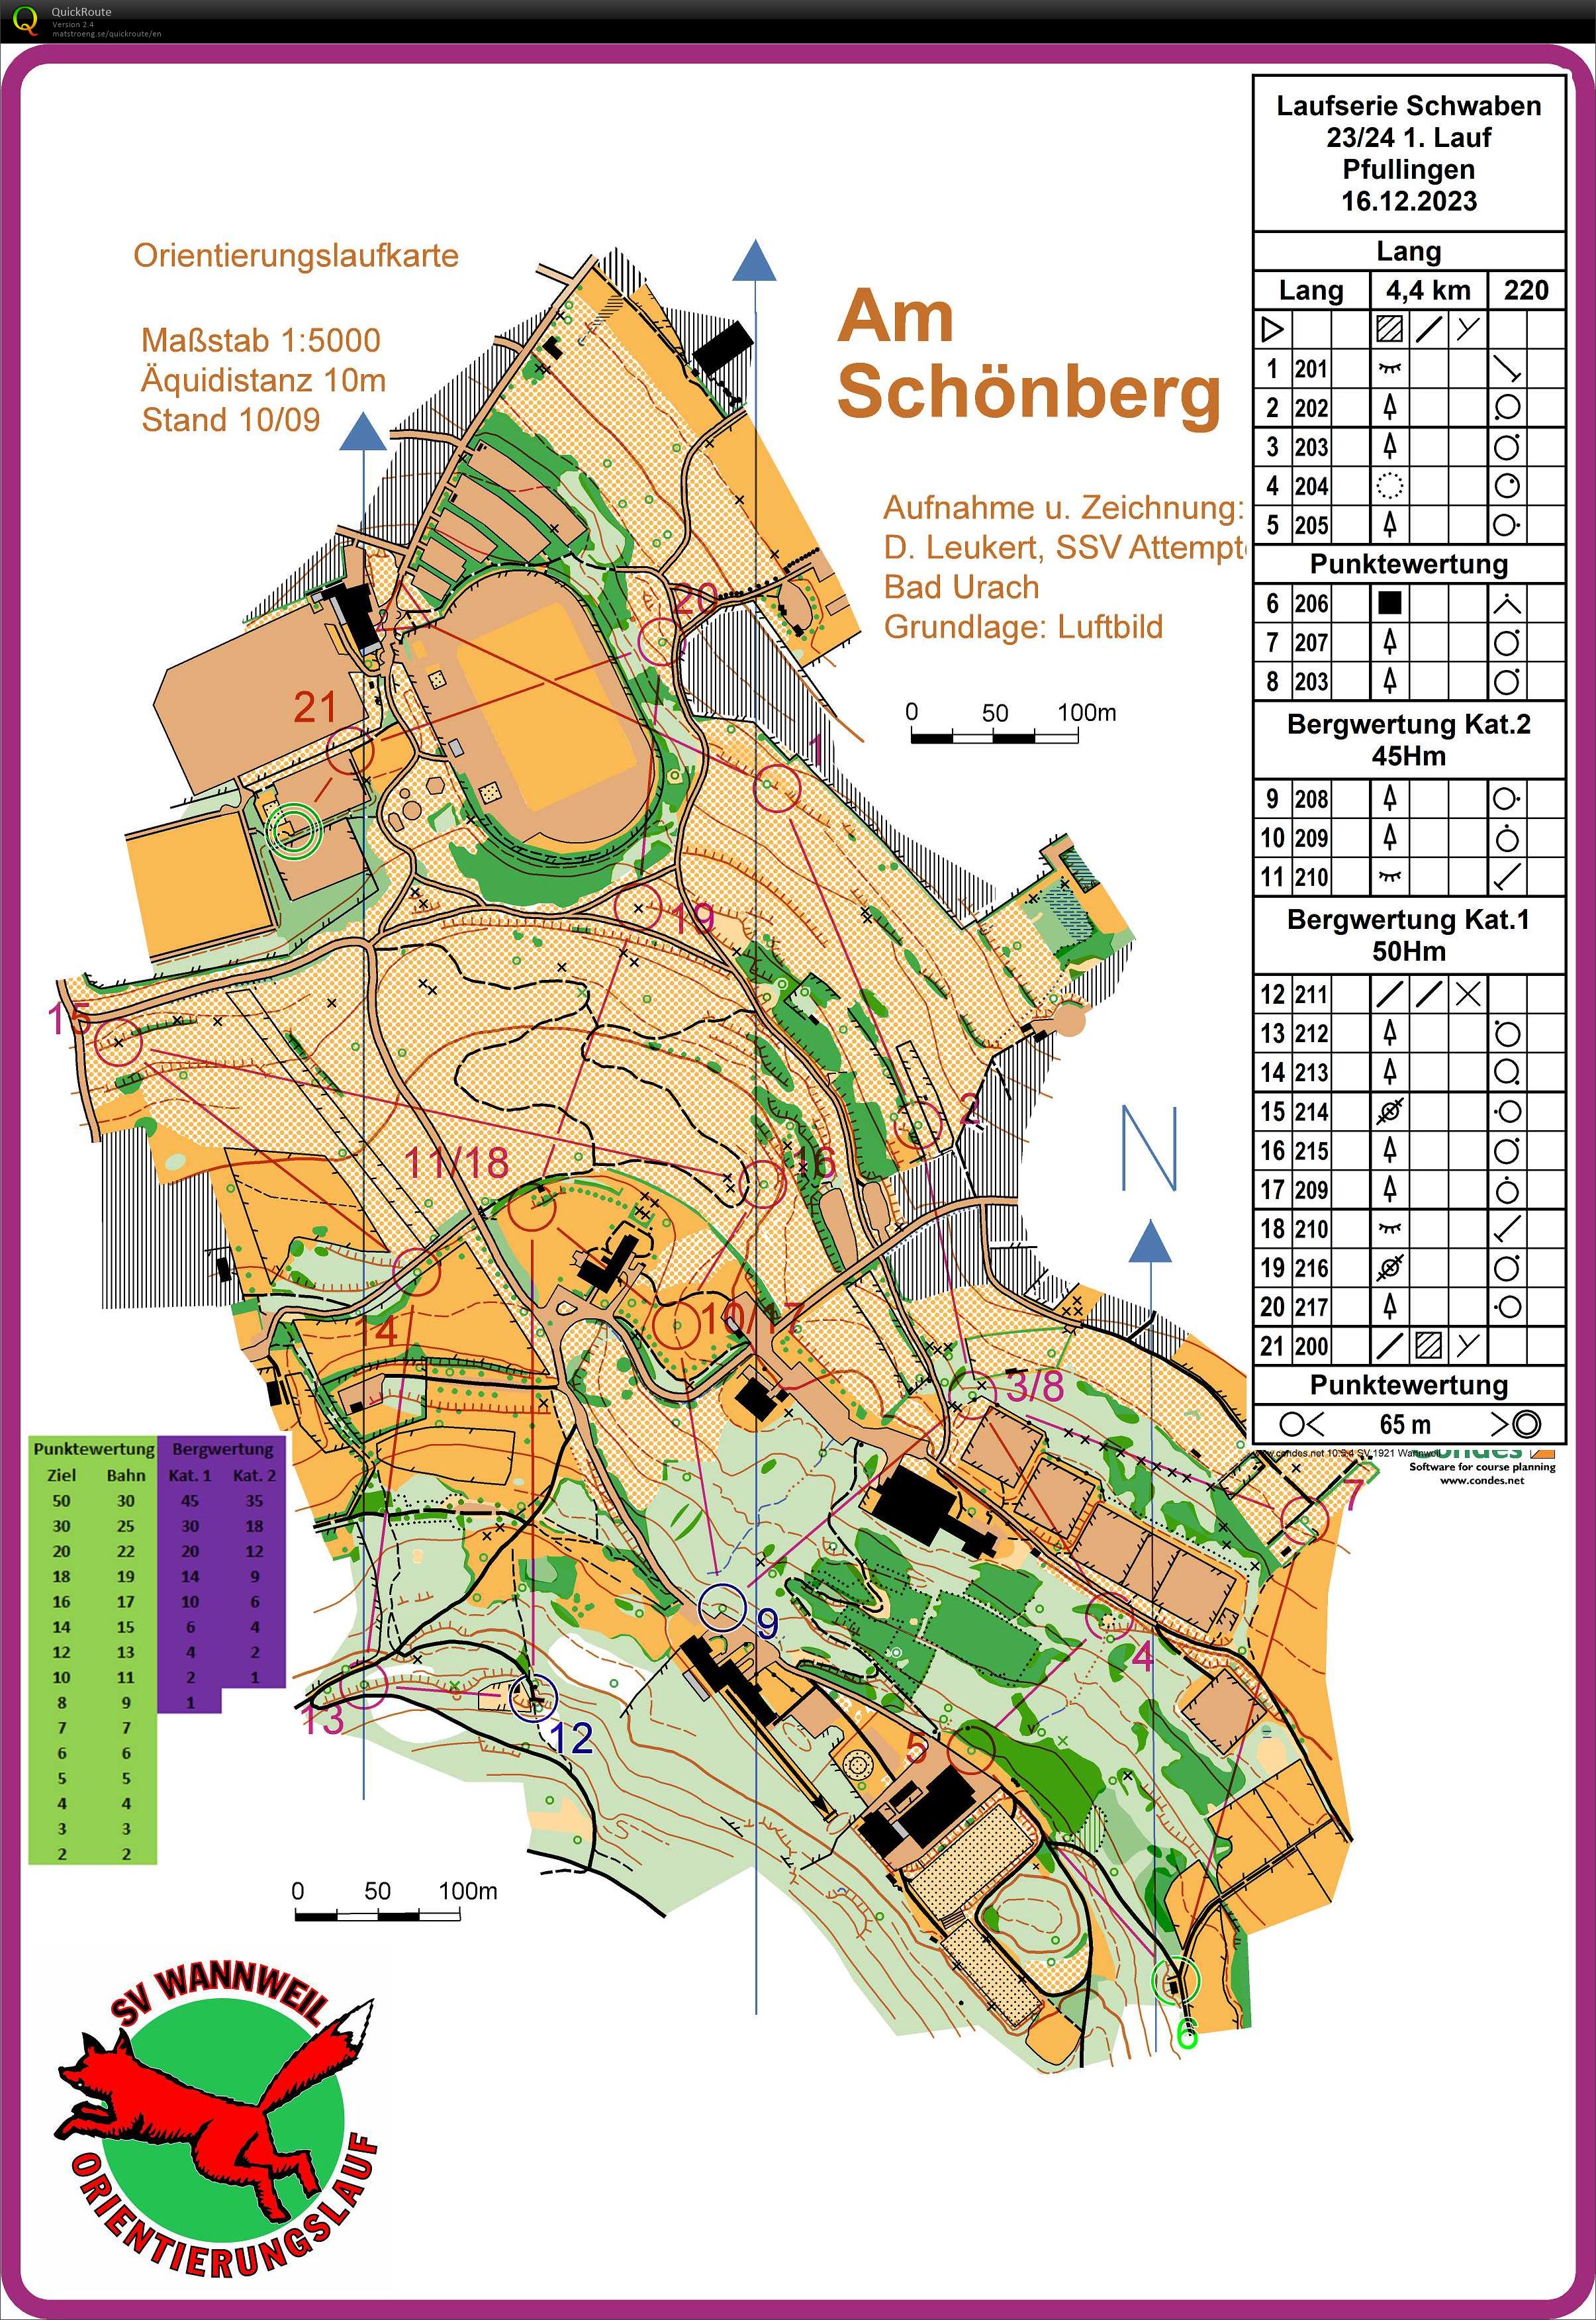 Laufserie Schwaben 23/24 1. Round Pfullingen (2023-12-16)